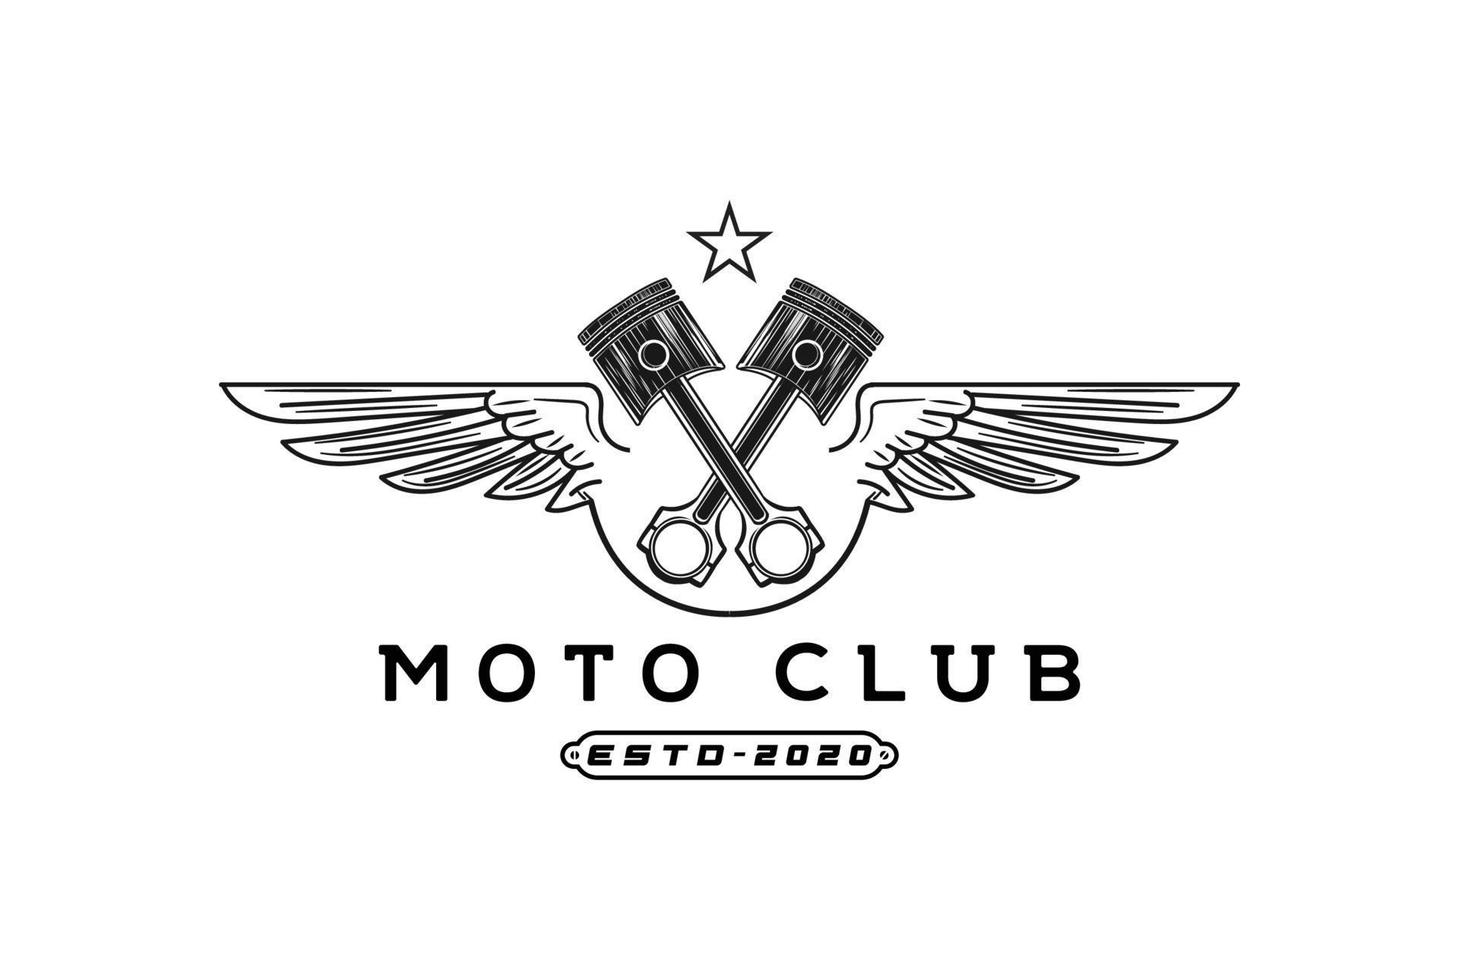 Crossed Piston Wings for Custom Garage or Motorcycle Biker Club Logo vector